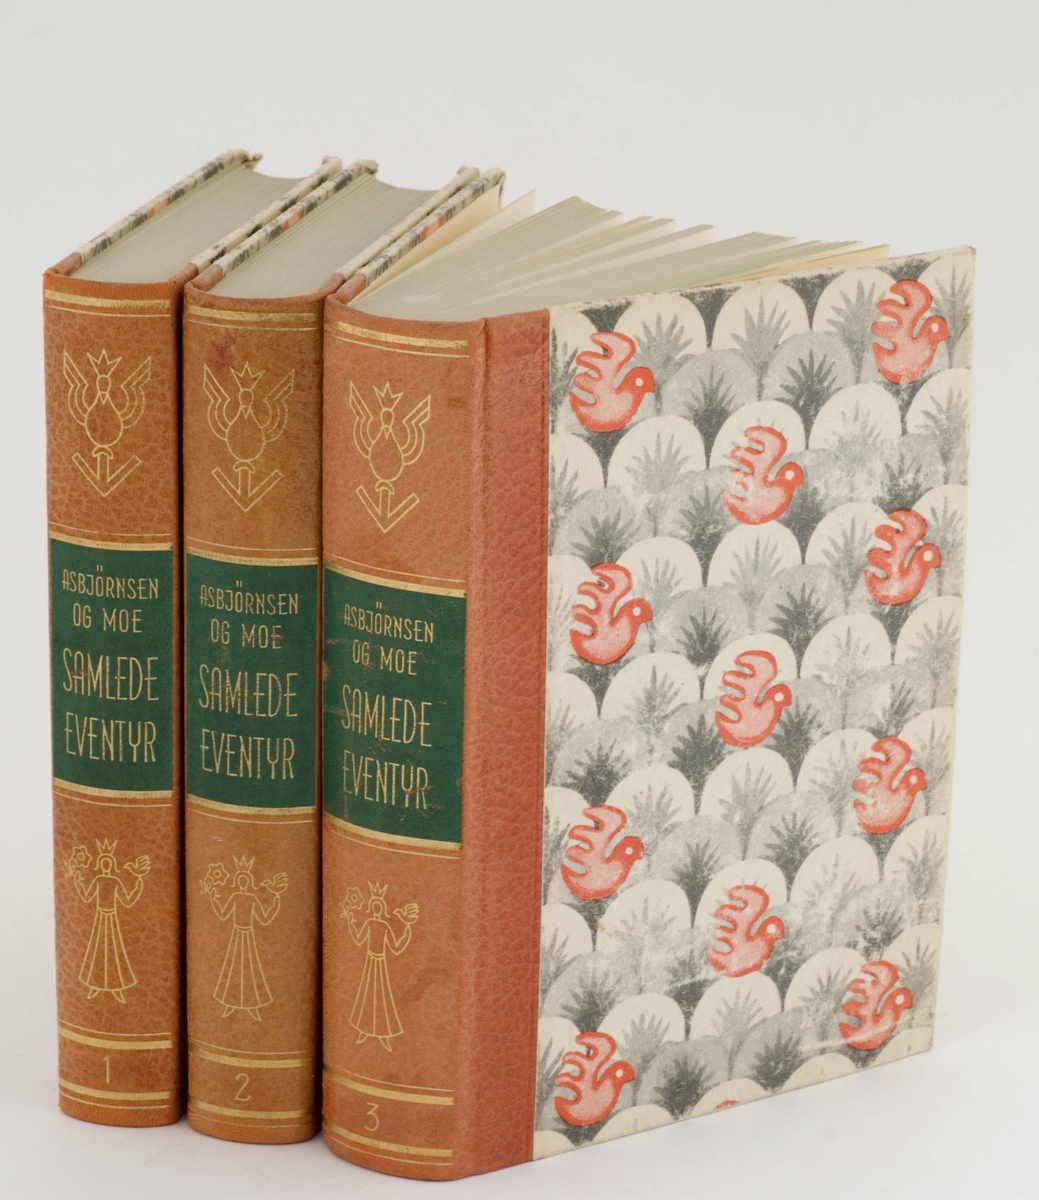 Tre bind av Asbjørnsen og Moes Samlede Eventyr: 1-3
Rødlig rygg med gullpreget tekst og dekor, 
rødt og gråmønstrete permer, innbundet.